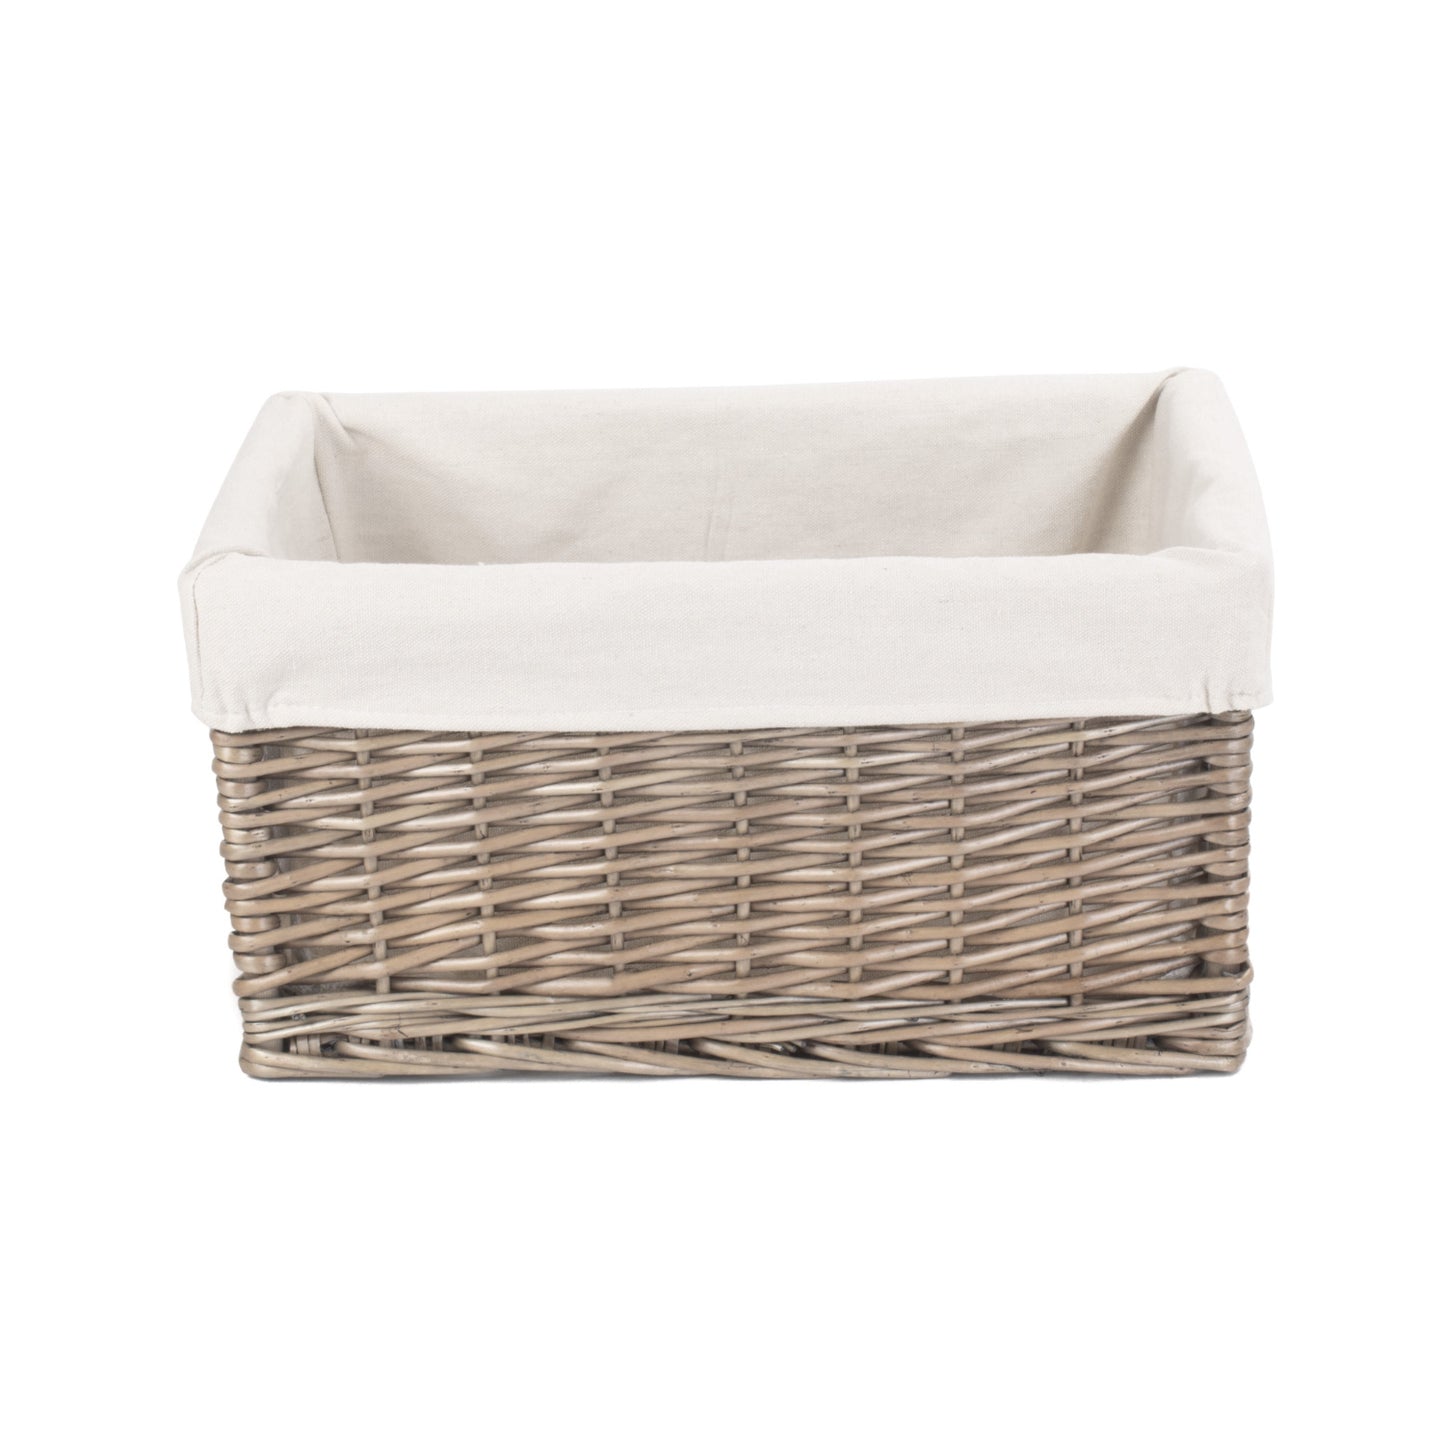 Extra Large Antique Wash Storage Basket With White Lining